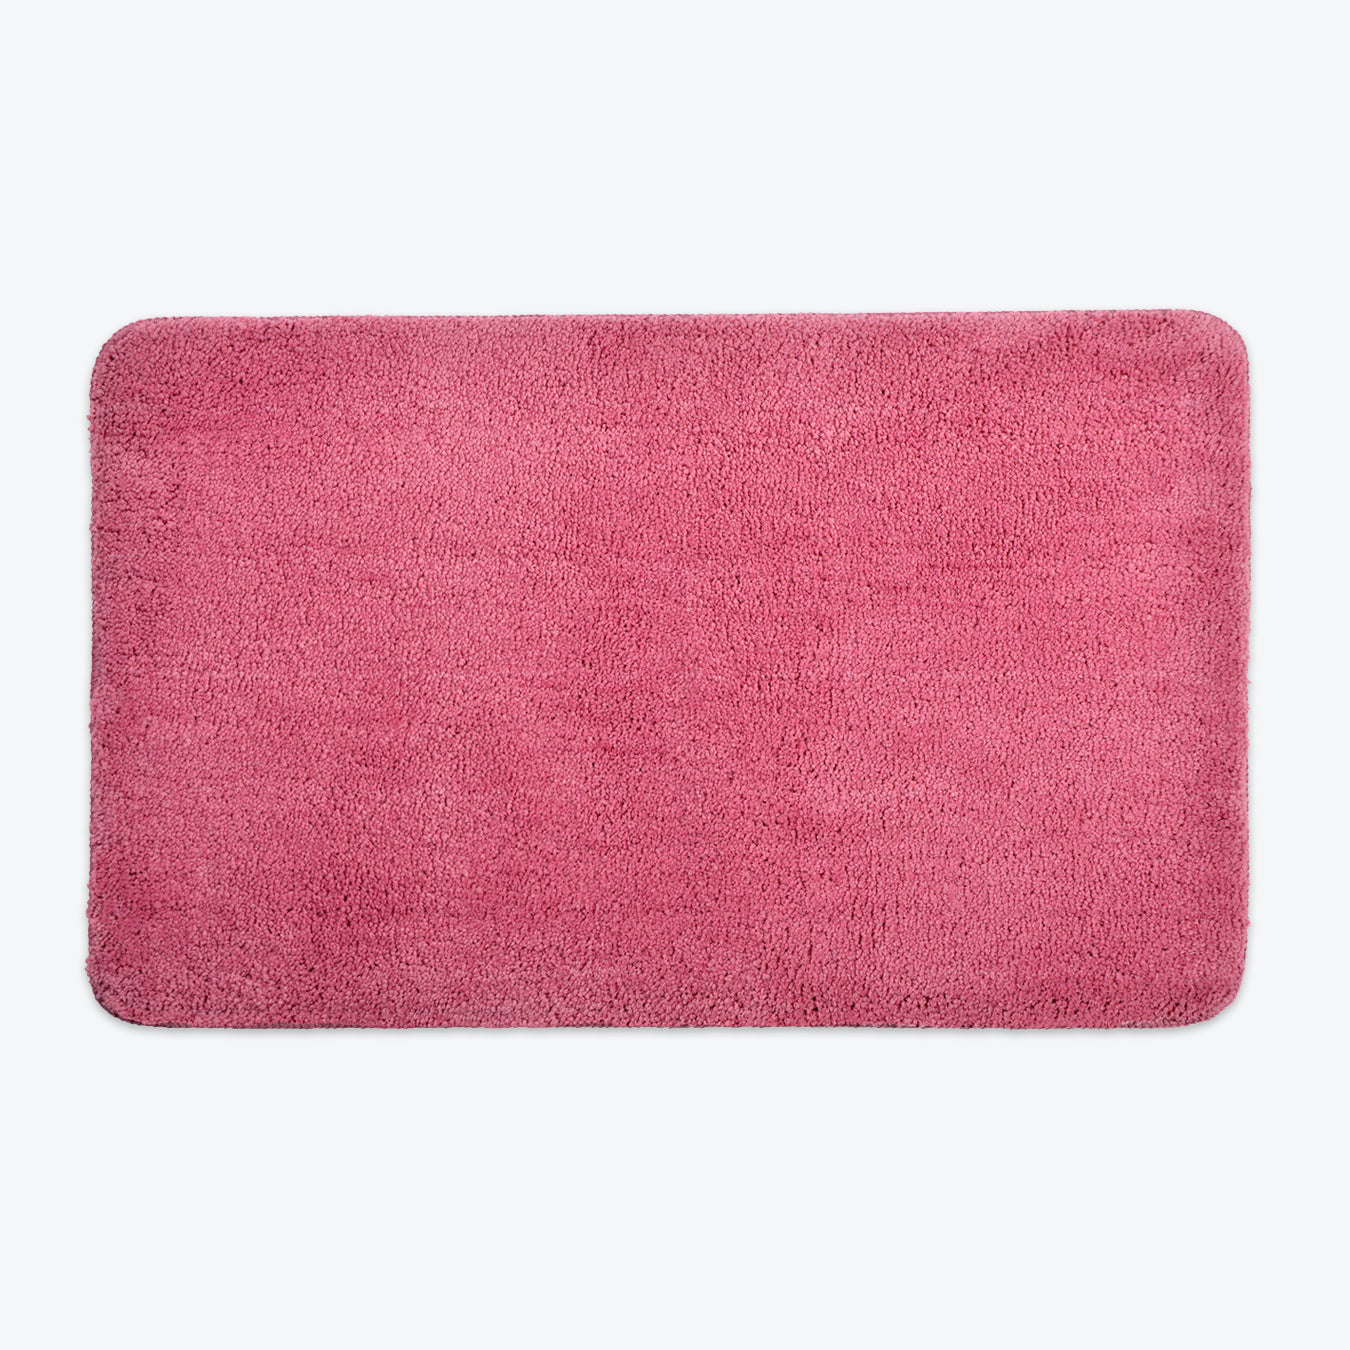 Rose Pink Microfibre Bath Mat - Premium Bathroom Rug